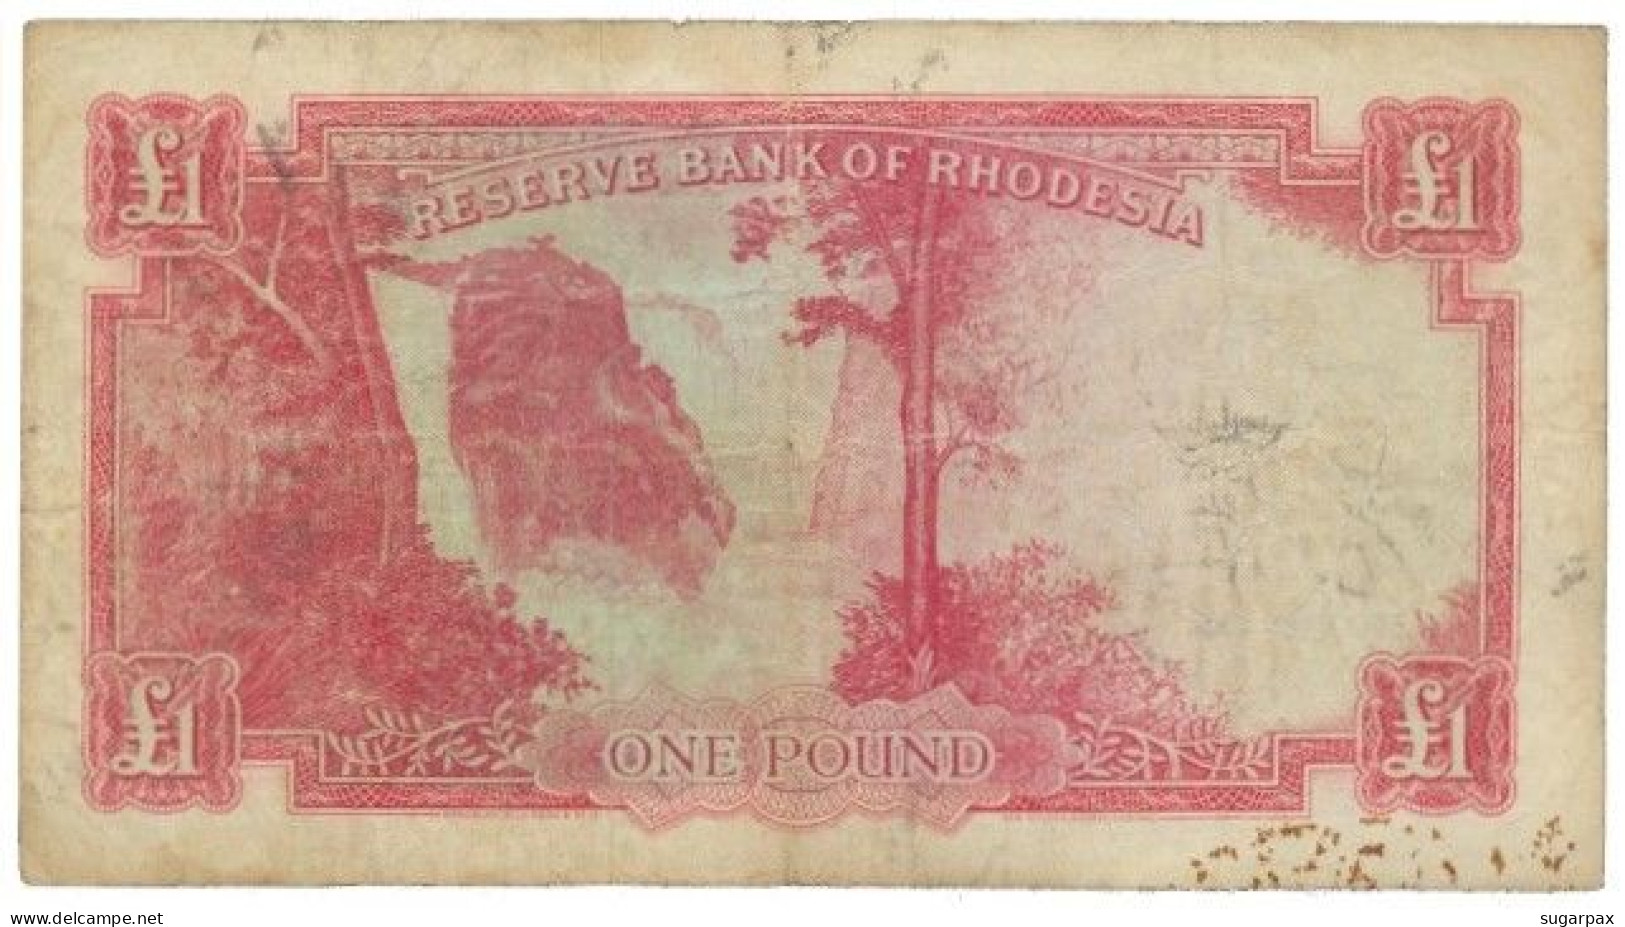 RHODESIA - 1 Pound - 21.09.1964 - Pick 25 - RRRRRRRRRR - Queen Elizabeth II - Rhodesië